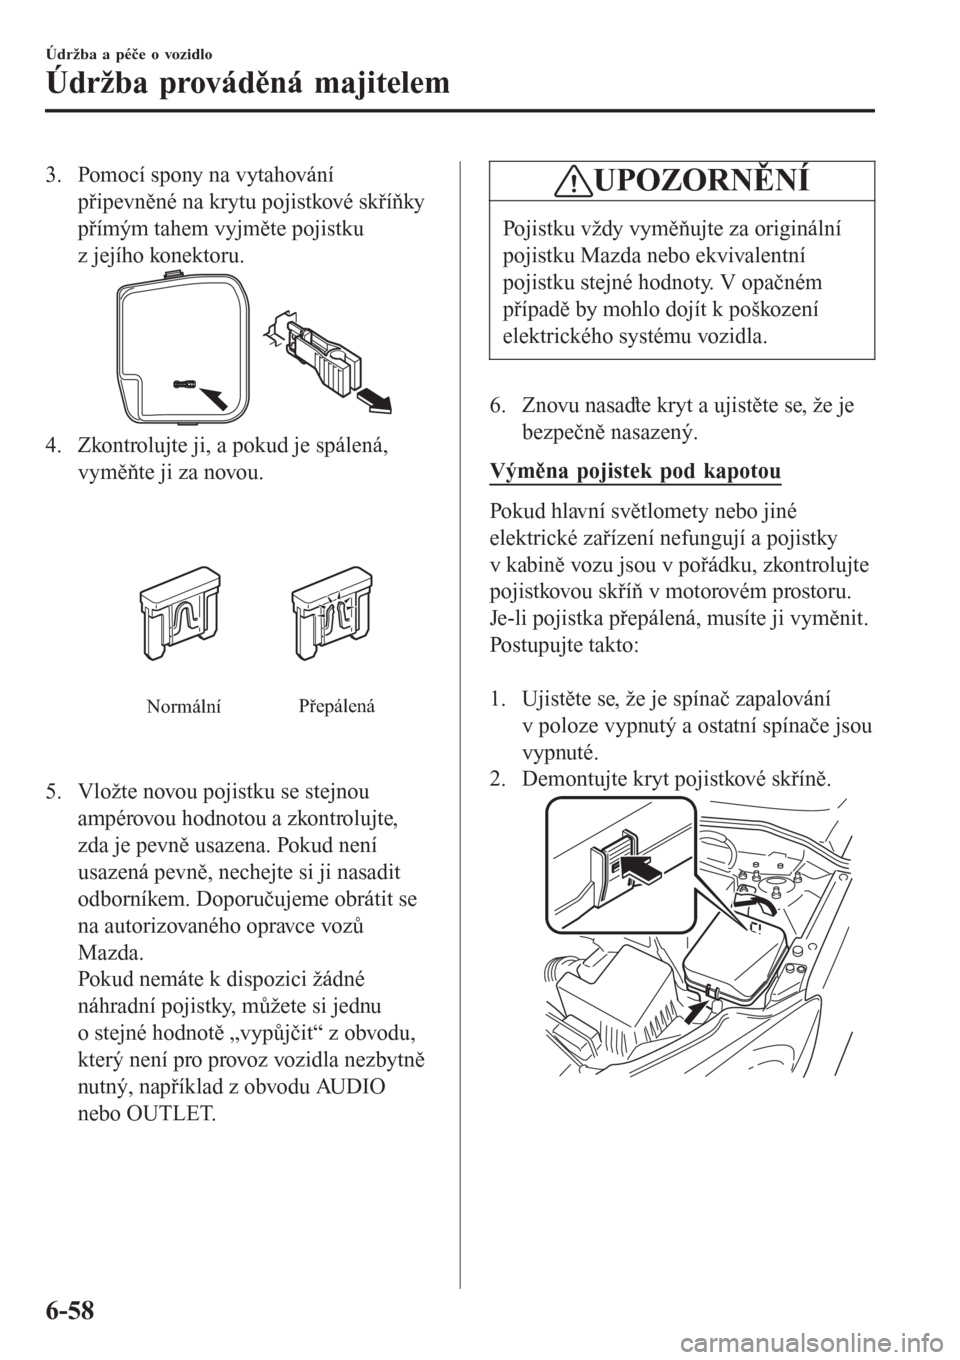 MAZDA MODEL CX-3 2016  Návod k obsluze (in Czech) 3. Pomocí spony na vytahování
připevněné na krytu pojistkové skříňky
přímým tahem vyjměte pojistku
z jejího konektoru.
4. Zkontrolujte ji, a pokud je spálená,
vyměňte ji za novou.
N